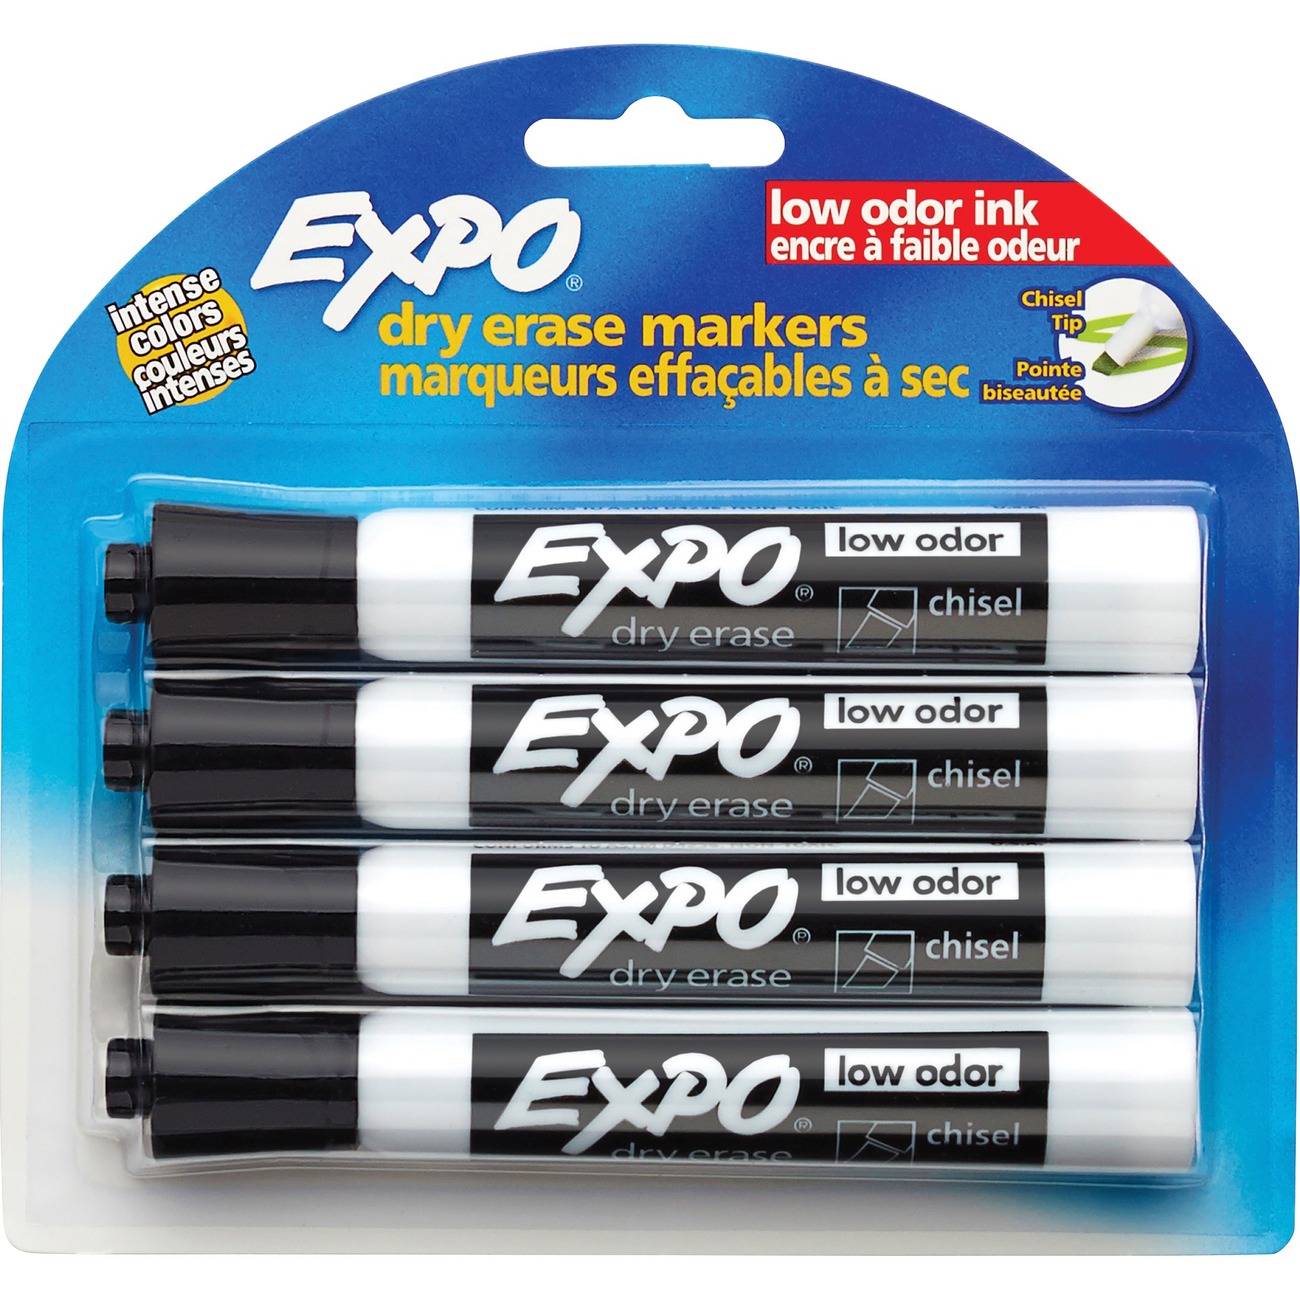 Expo Magnetic Dry Erase Marker - Fine Tip - Black - 4 Pack